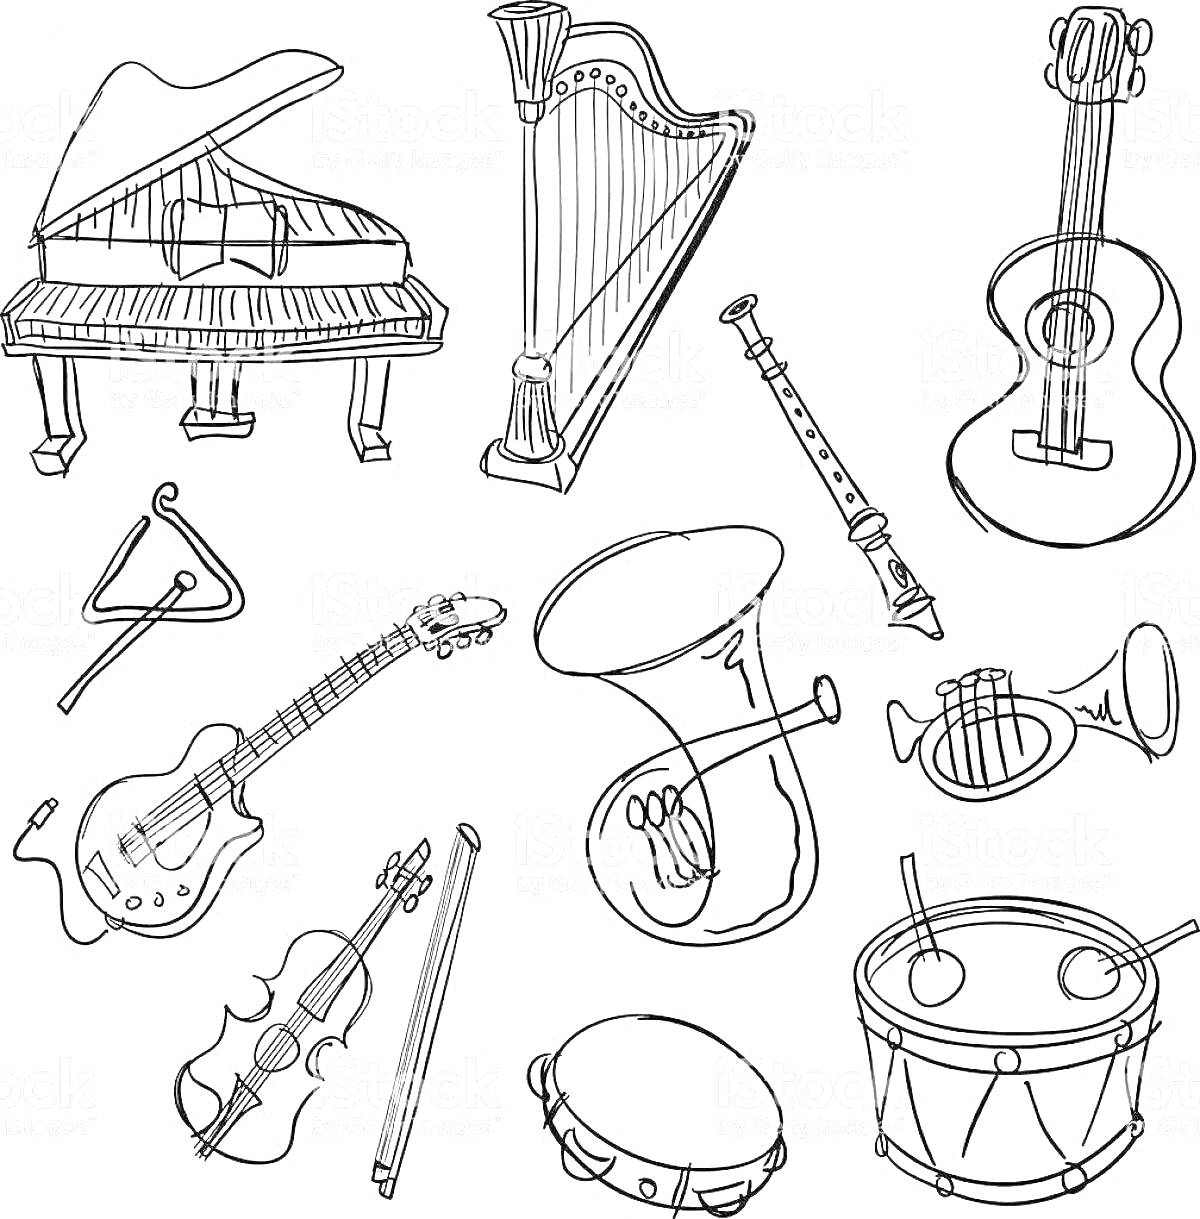 На раскраске изображено: Пианино, Арфа, Гитара, Электрогитара, Труба, Скрипка, Контрабас, Барабан, Музыкальные инструменты, Треугольники